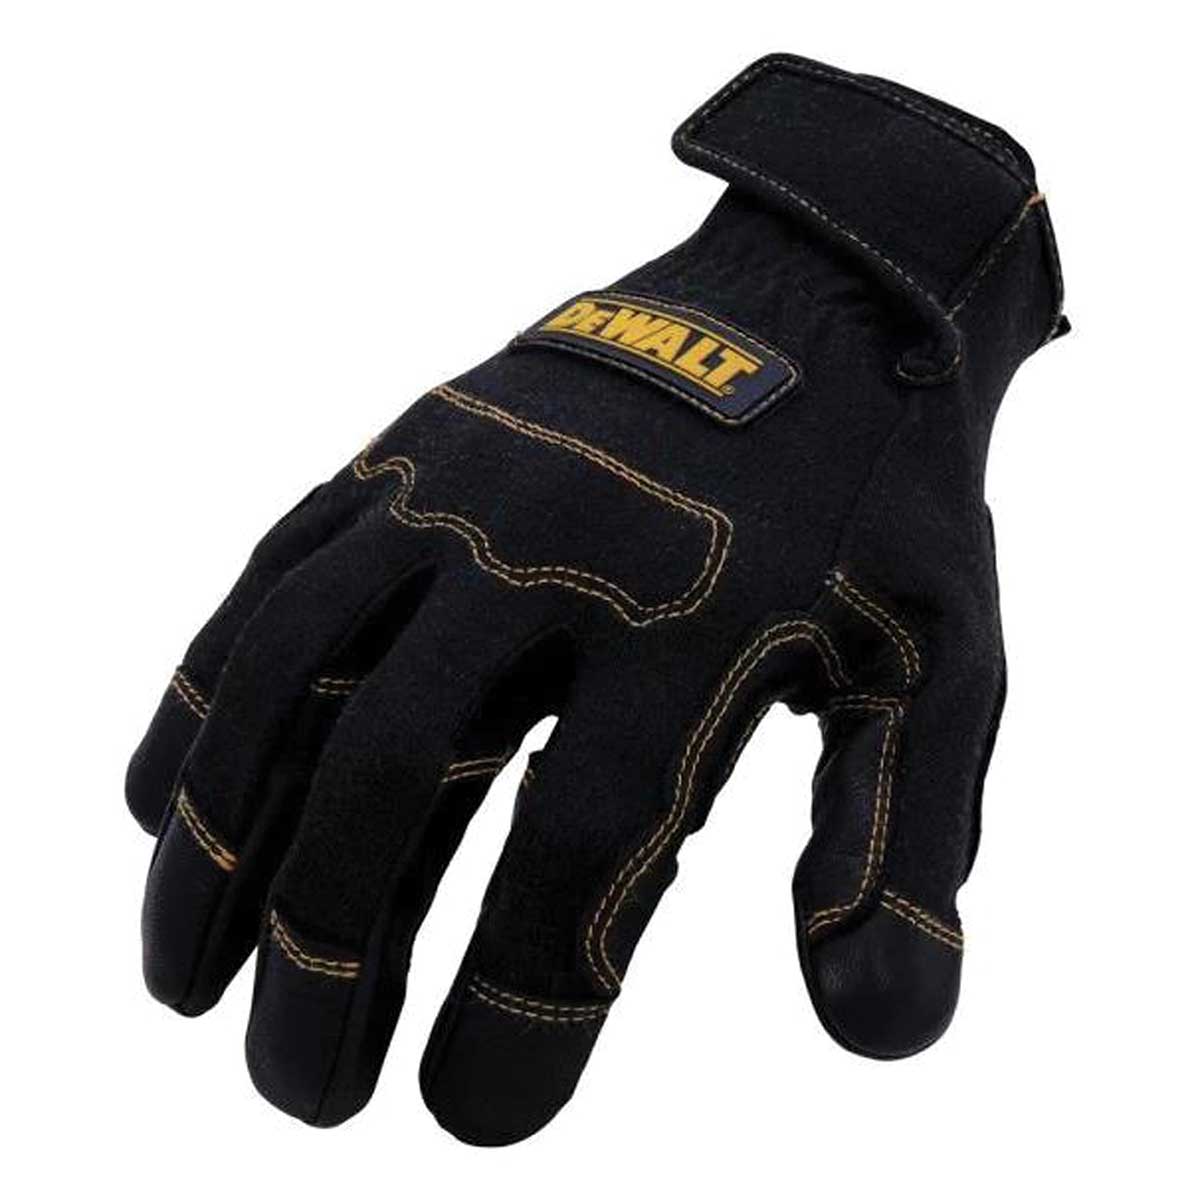 DEWALT Short Cuff Welding and Fabricator Gloves